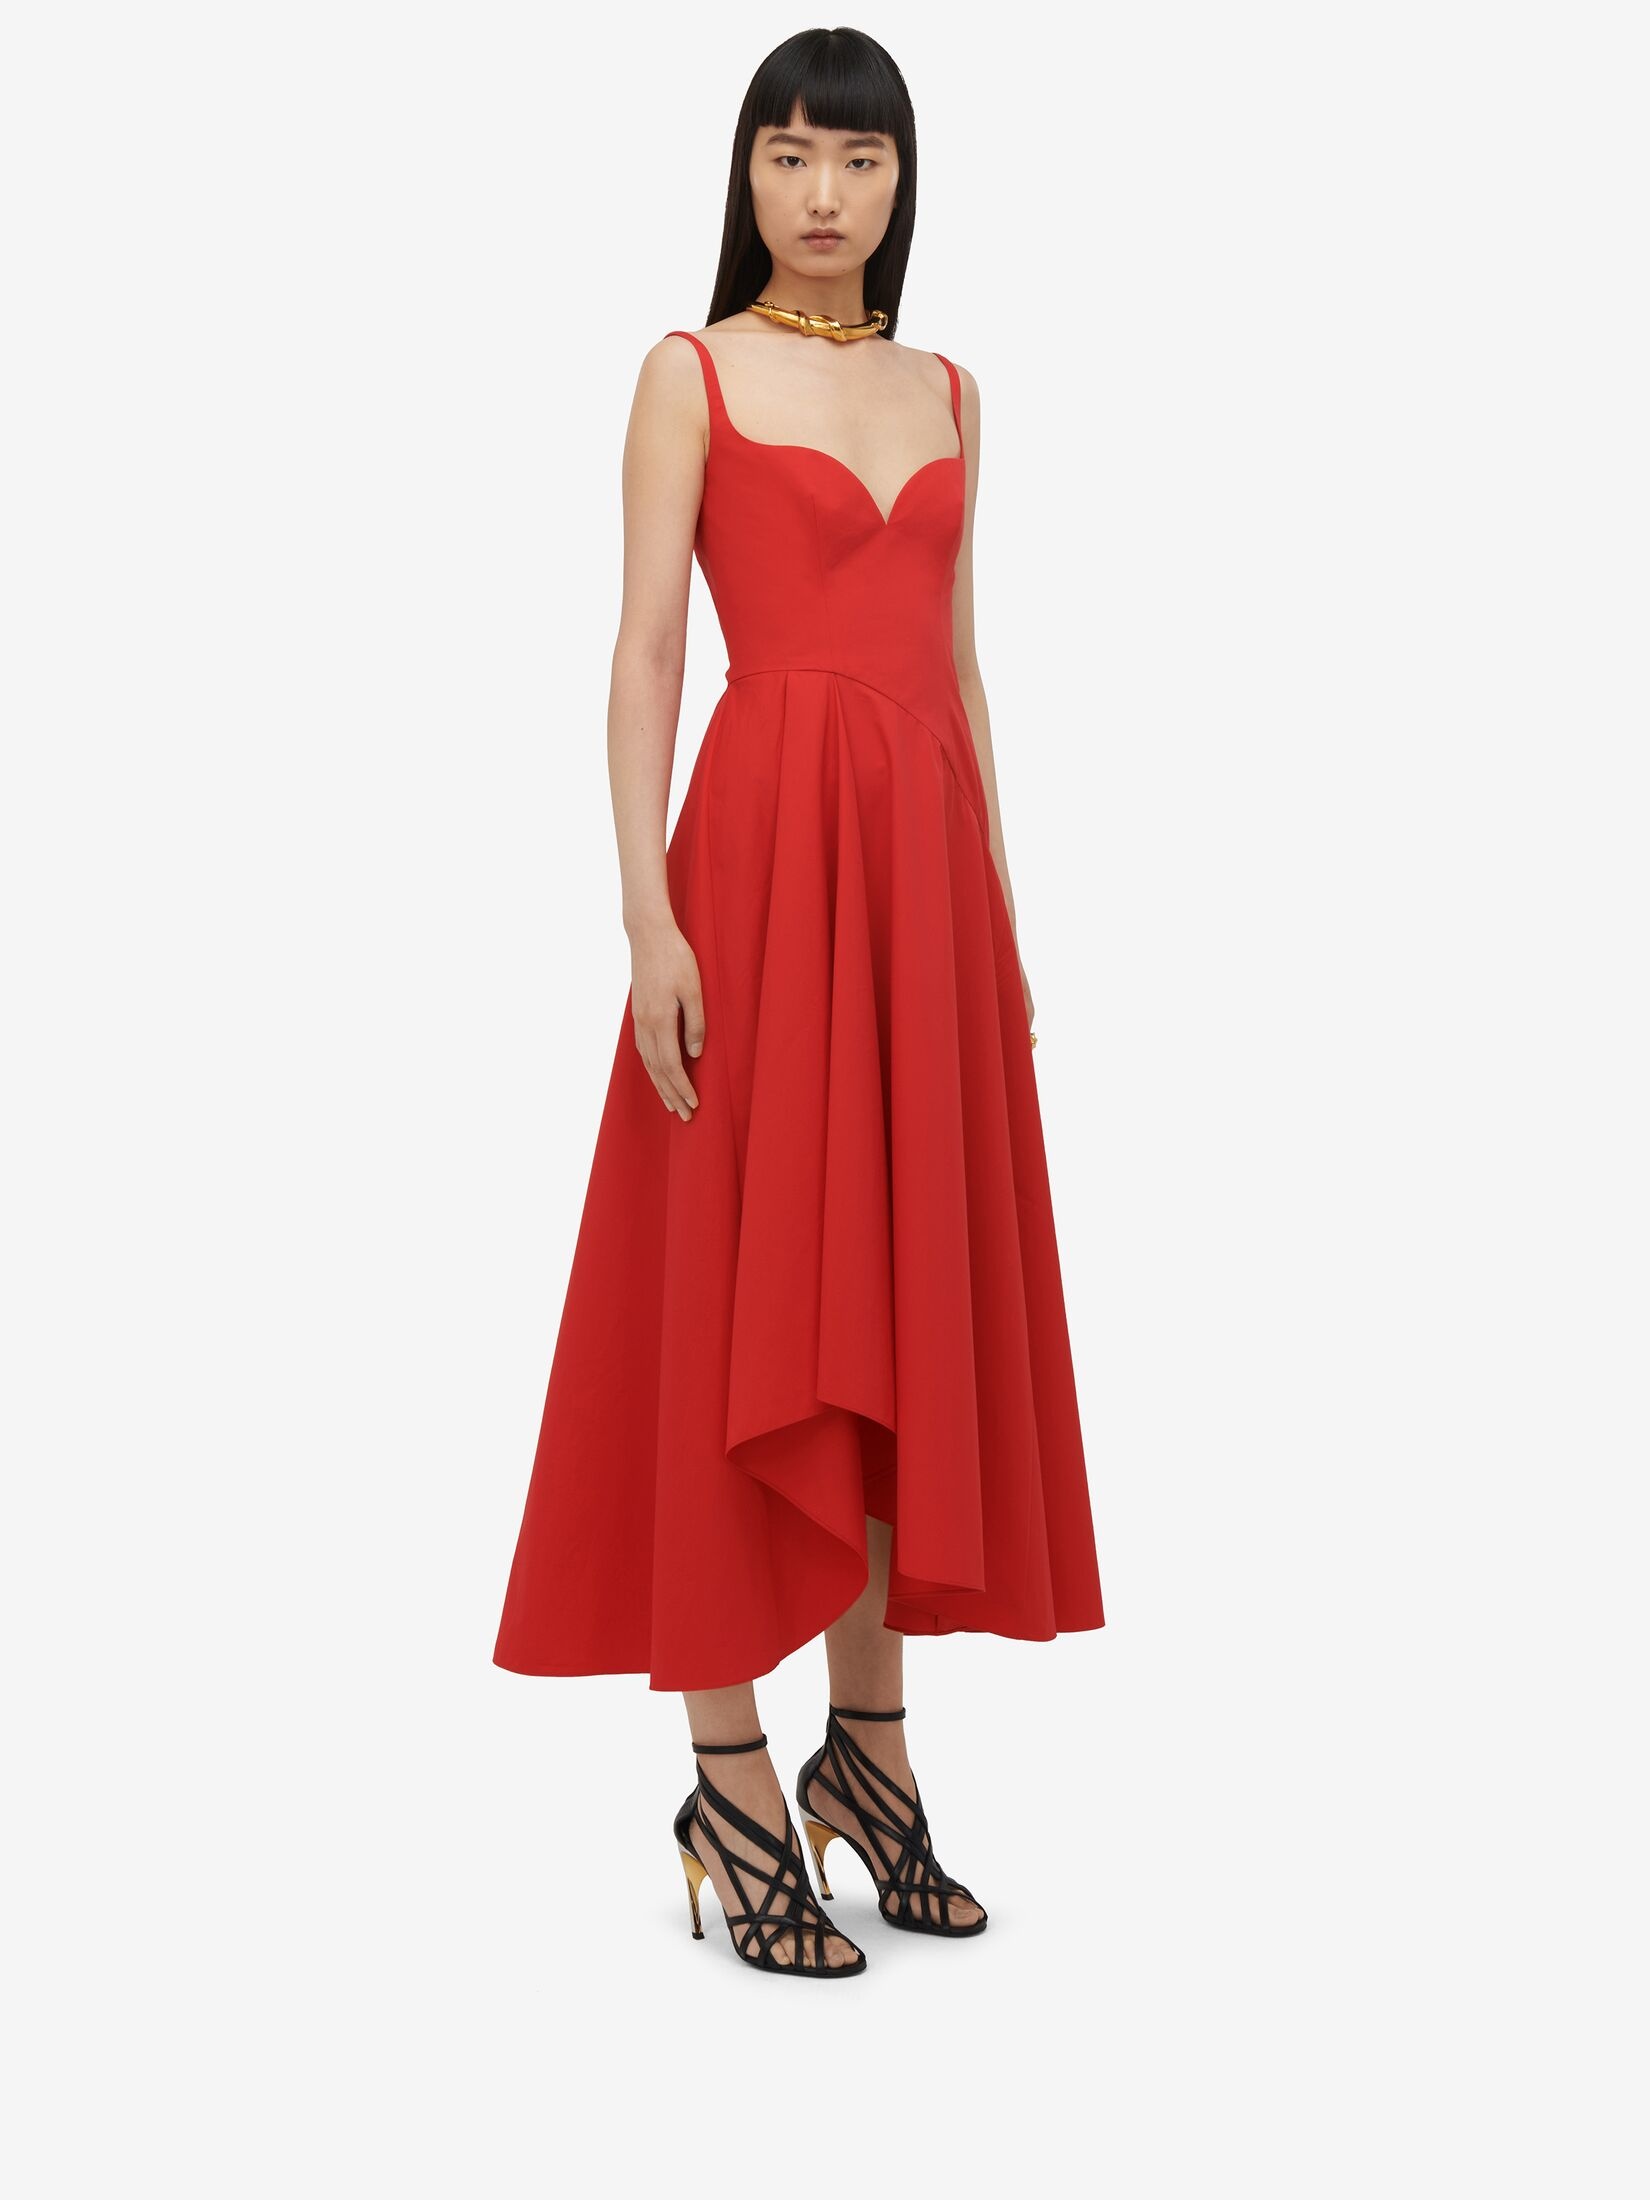 Women's Sweetheart Neckline Midi Dress in Lust Red - 3